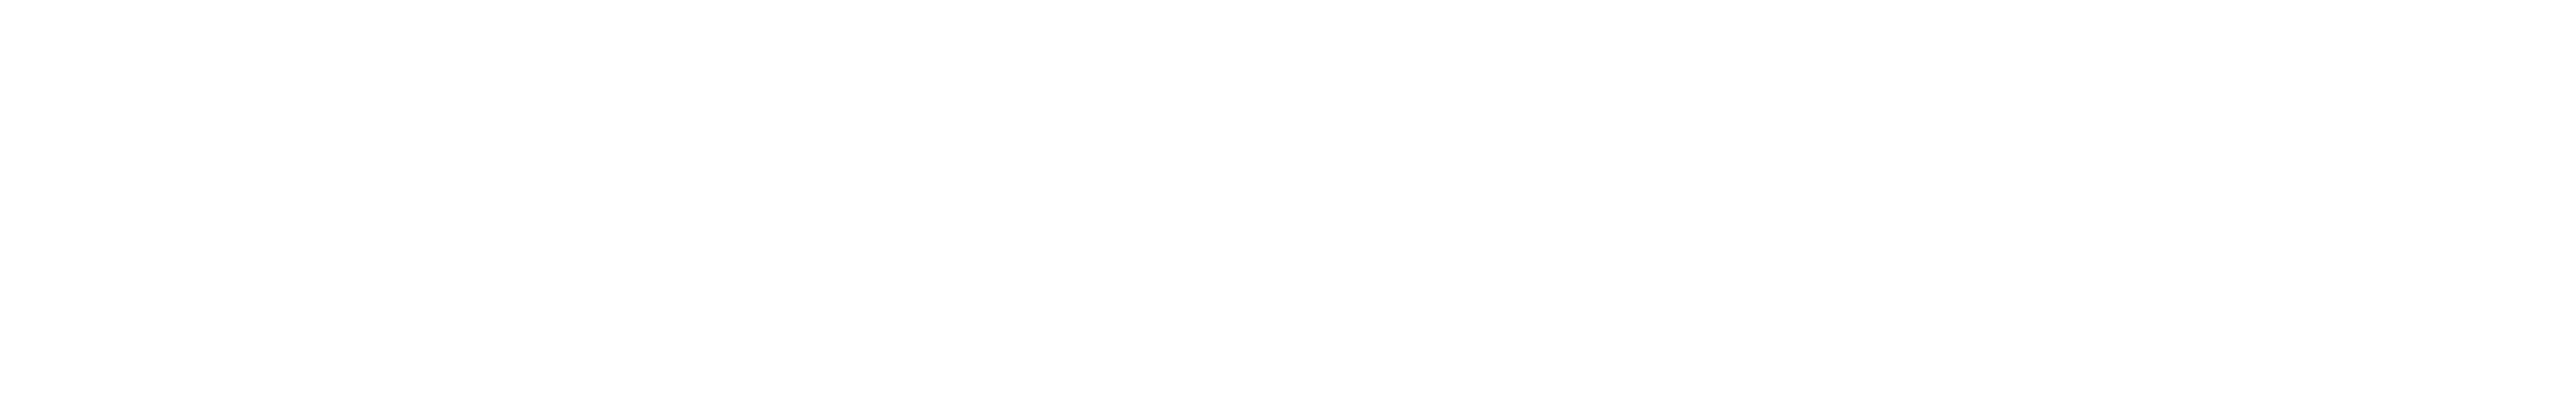 klokbox logo